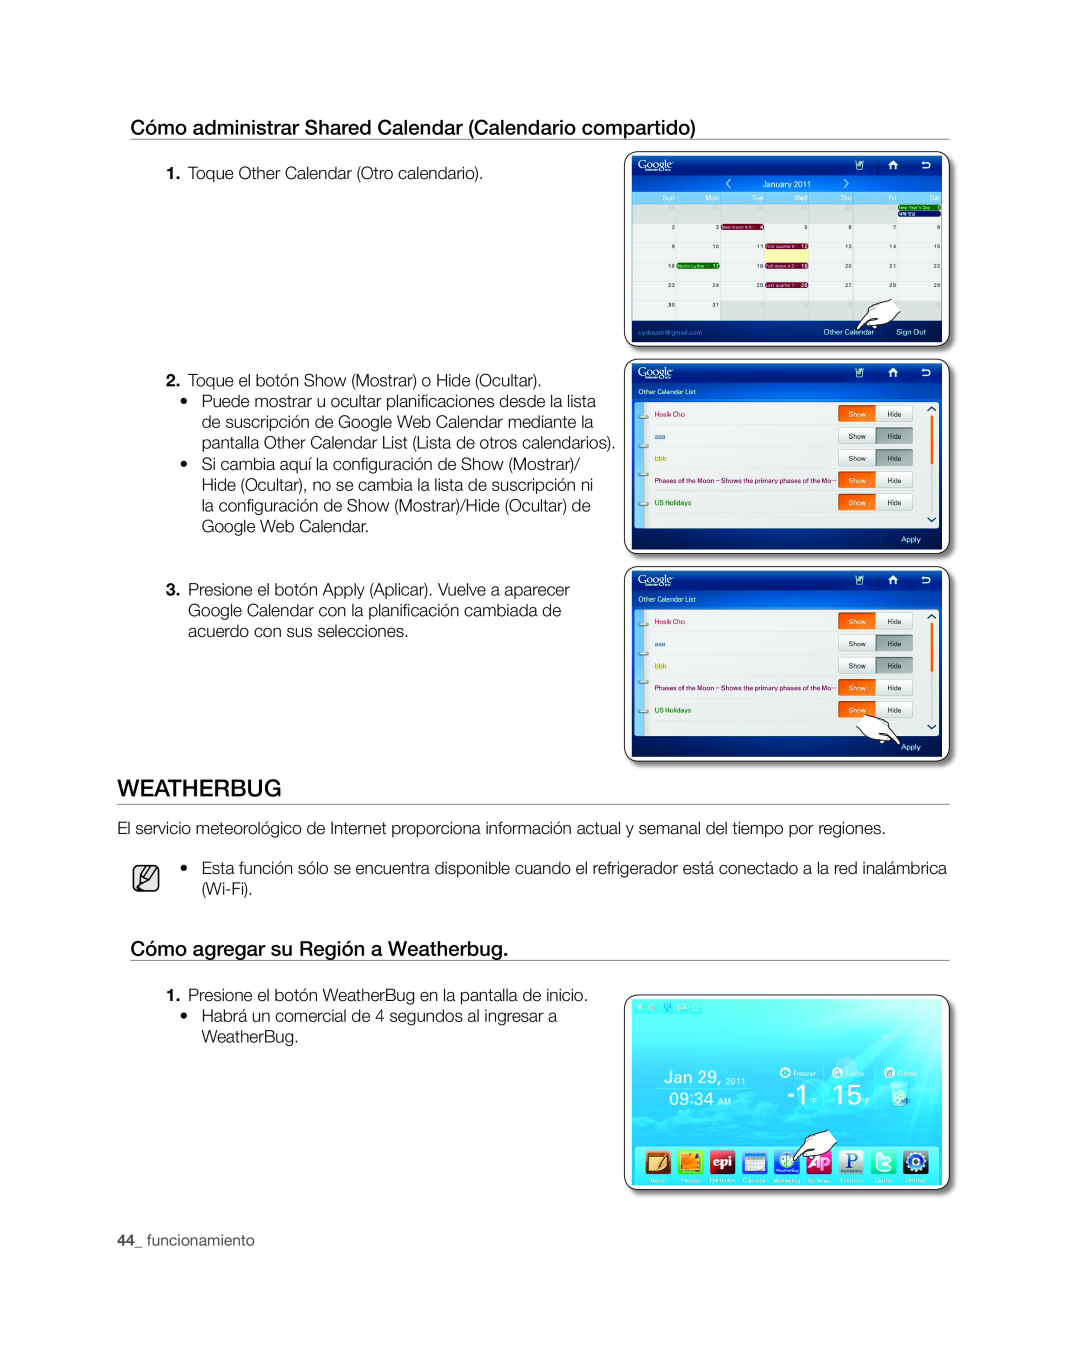 Samsung RSG309** Cómo administrar Shared Calendar Calendario compartido, Cómo agregar su Región a Weatherbug, WeatherBug 